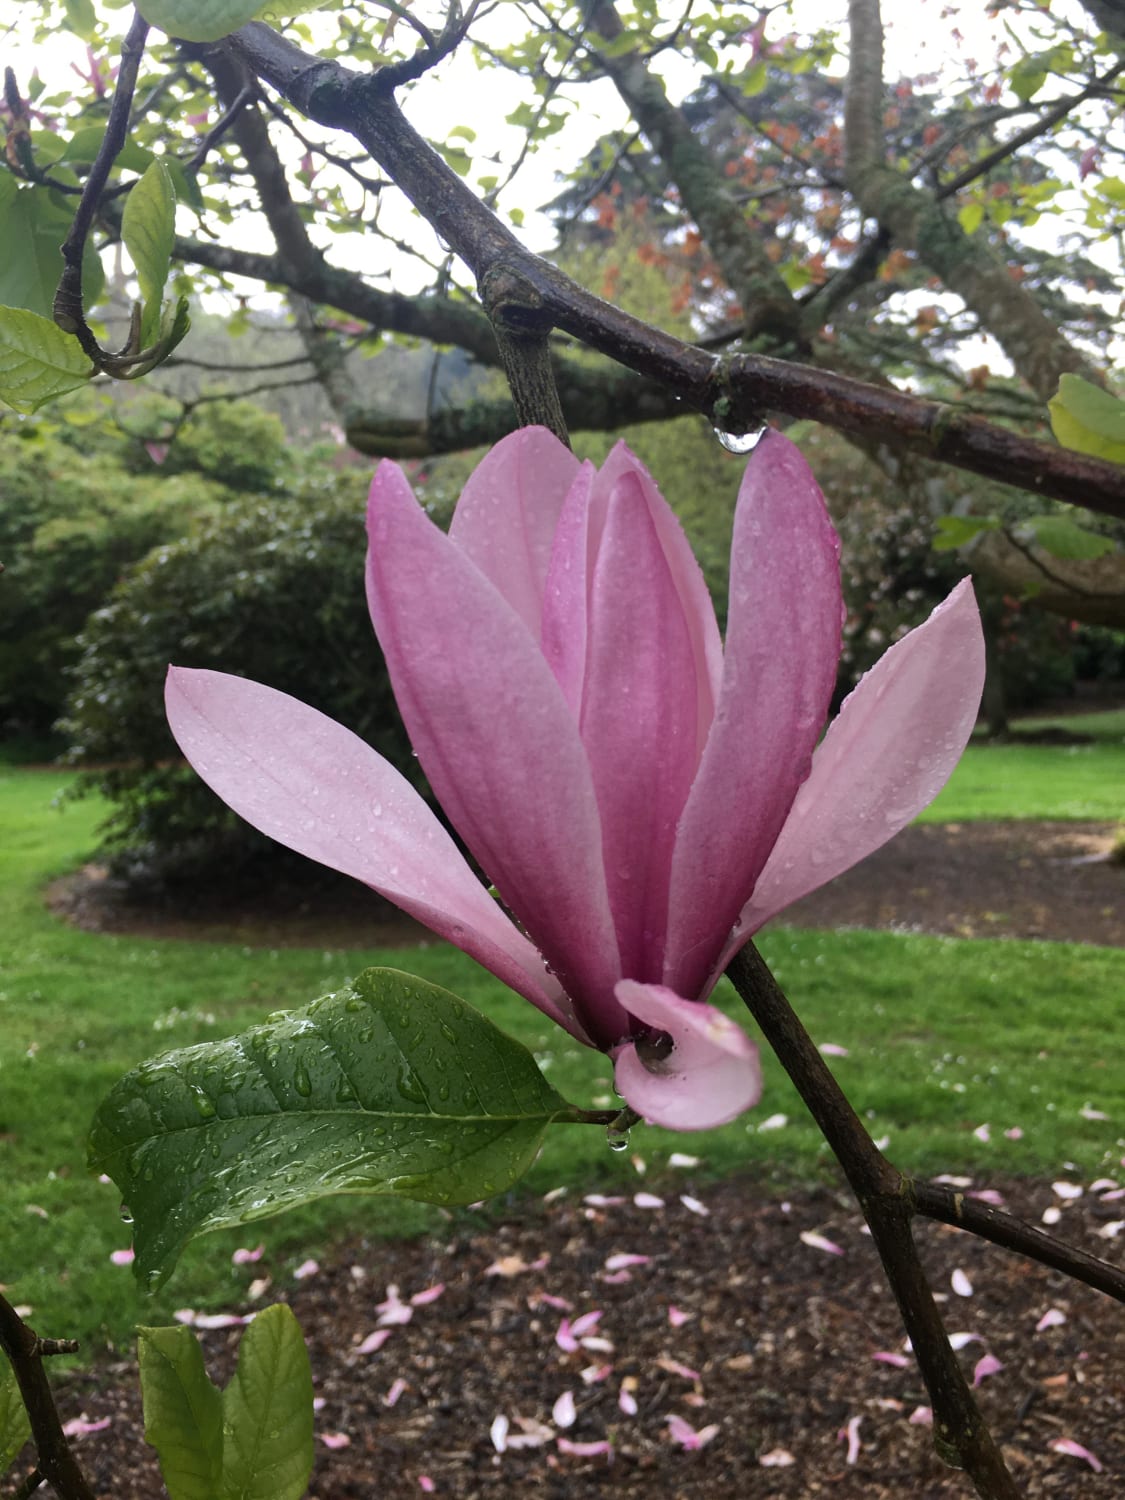 Lily magnolia in the rain